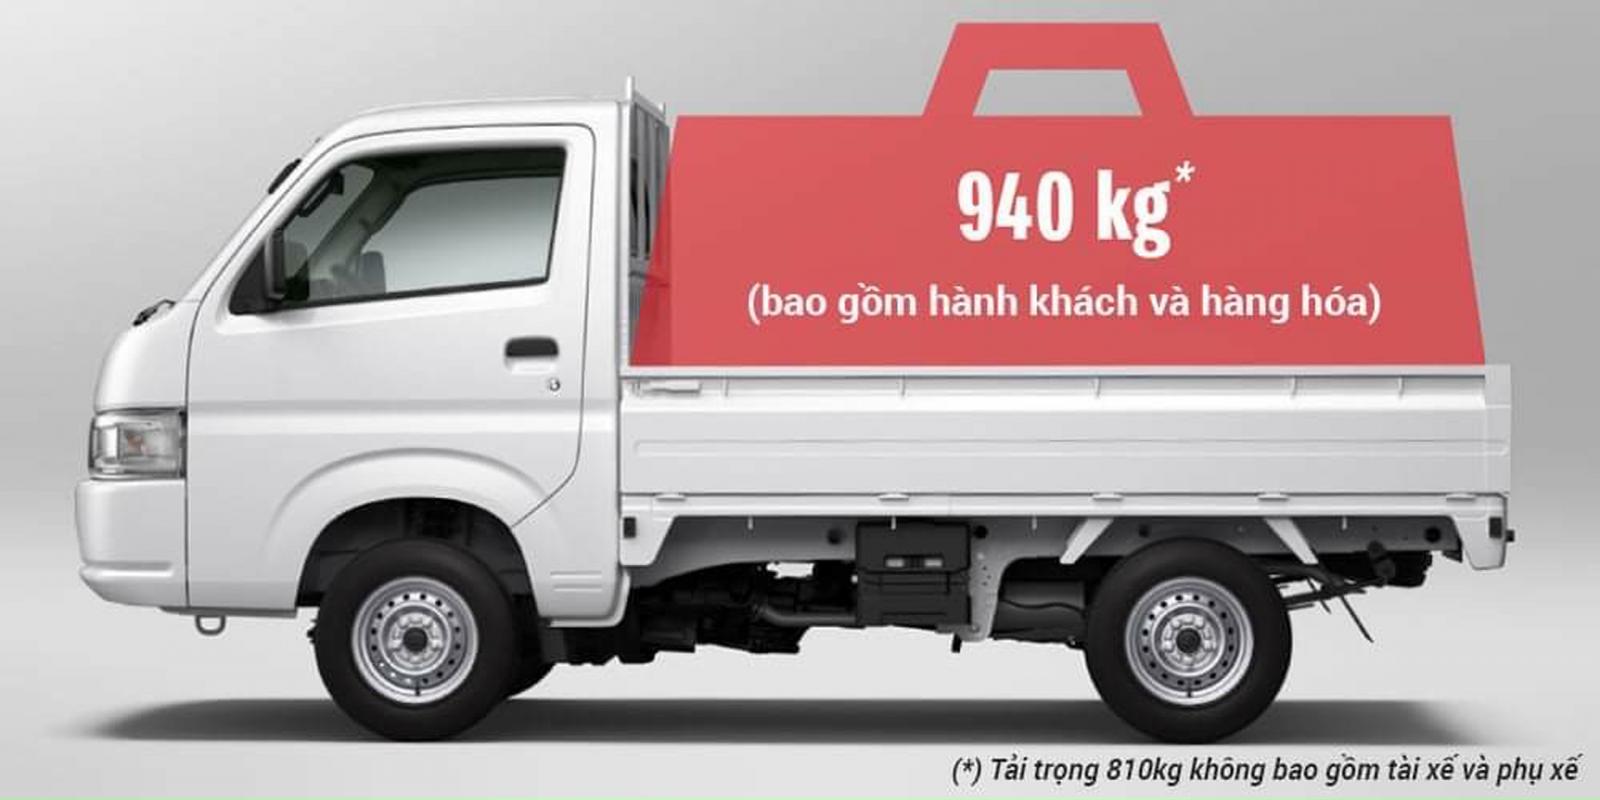 Suzuki Super Carry Pro 2021 - Suzuki Pro 940 kg các loại thùng